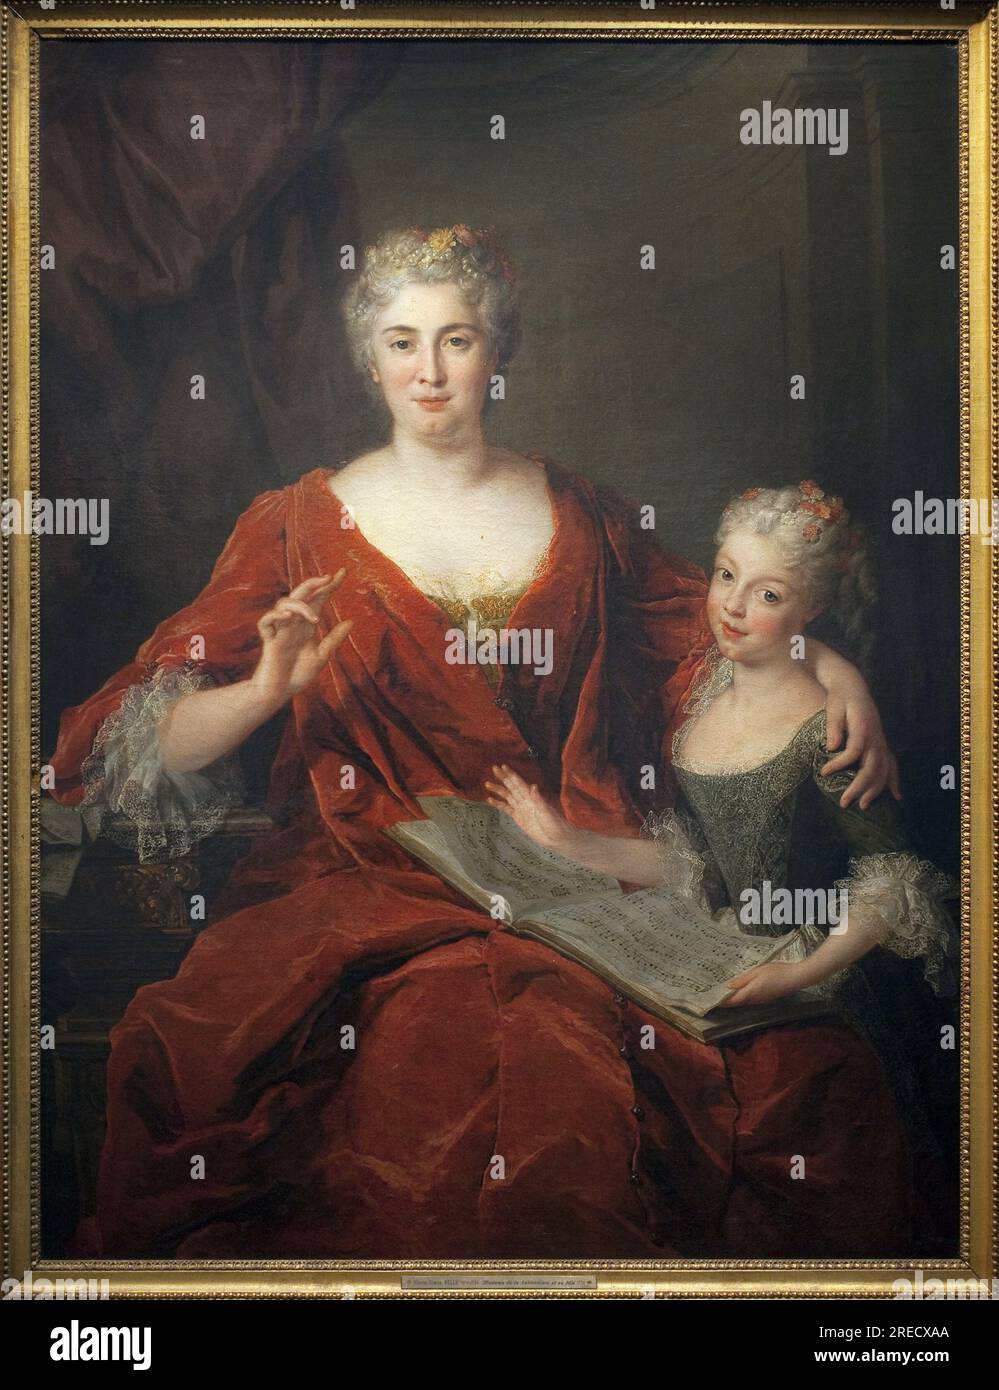 Madame de la Sablonniere et sa fille. Peinture de Alexis Simon Belle (1674-1734), Huile sur toile, 1724, Art francais 18e Siecle. Musée des Beaux Arts de Pau. Stockfoto